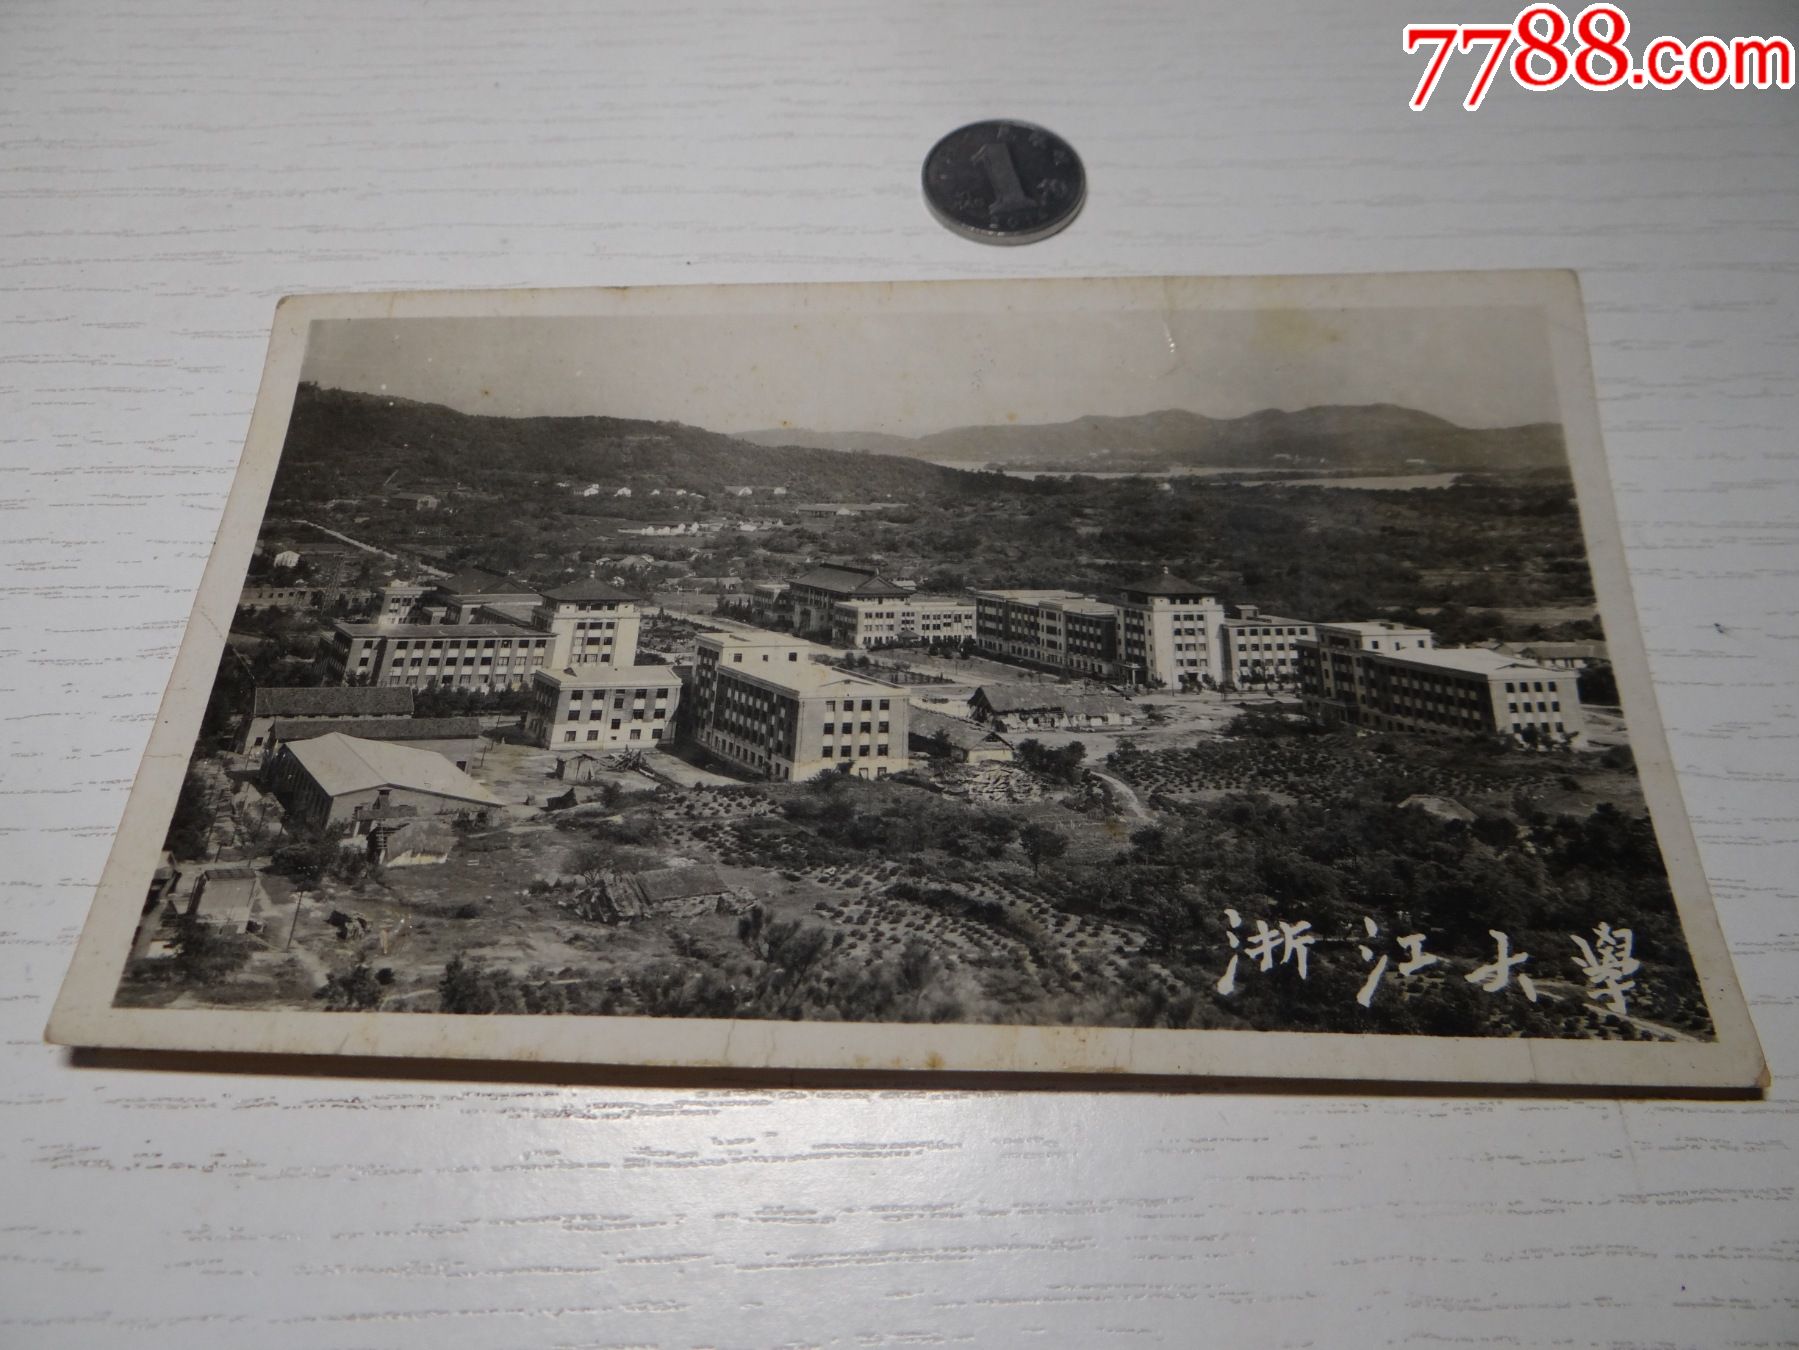 1959年浙江大学全景,校园中既有新建筑又有茅草屋